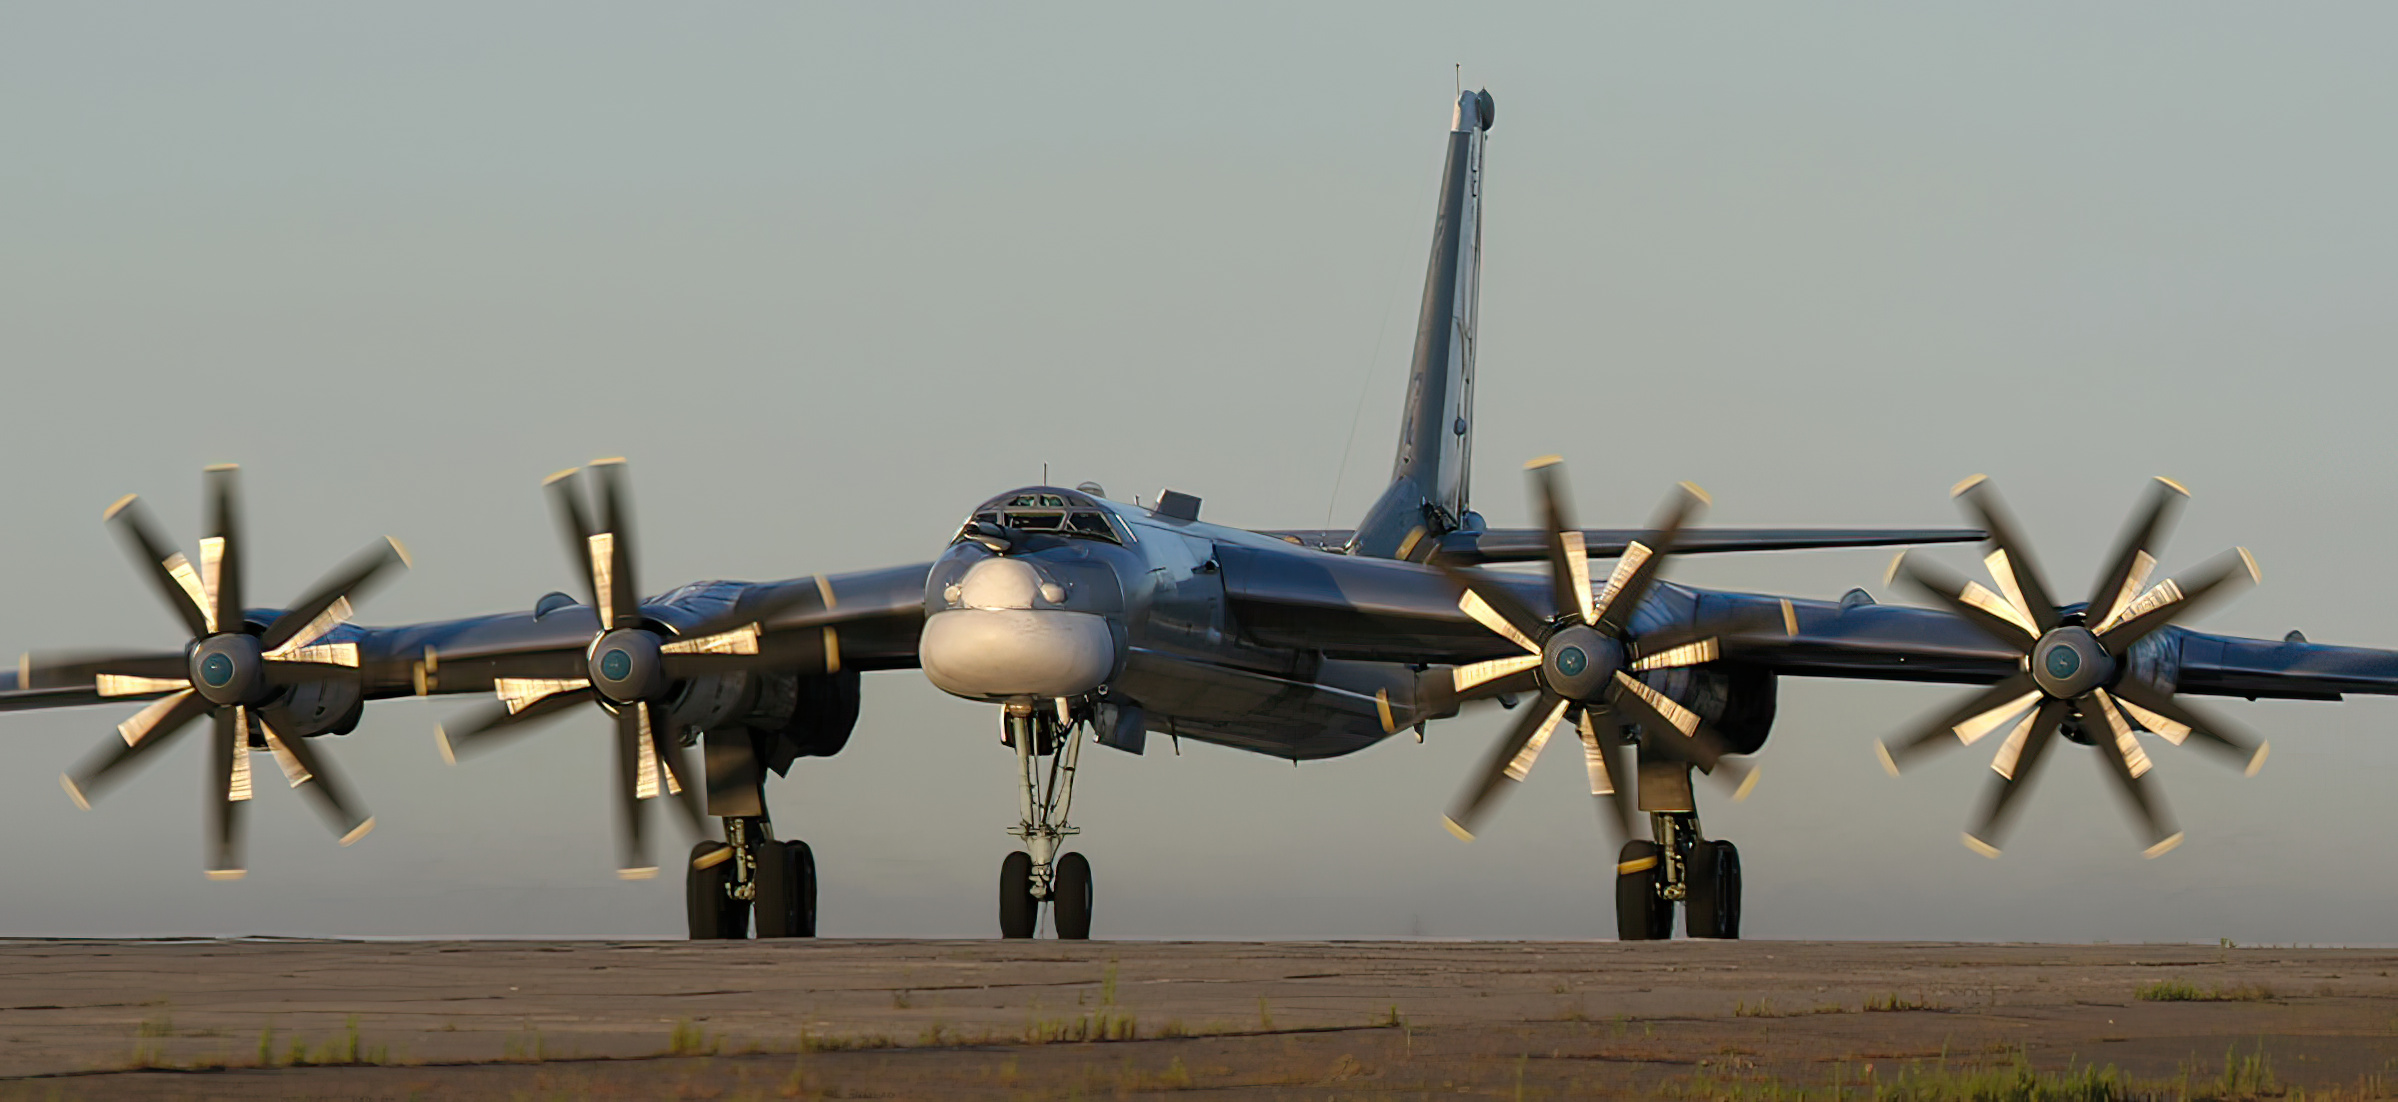 Tupolev Tu-95MS